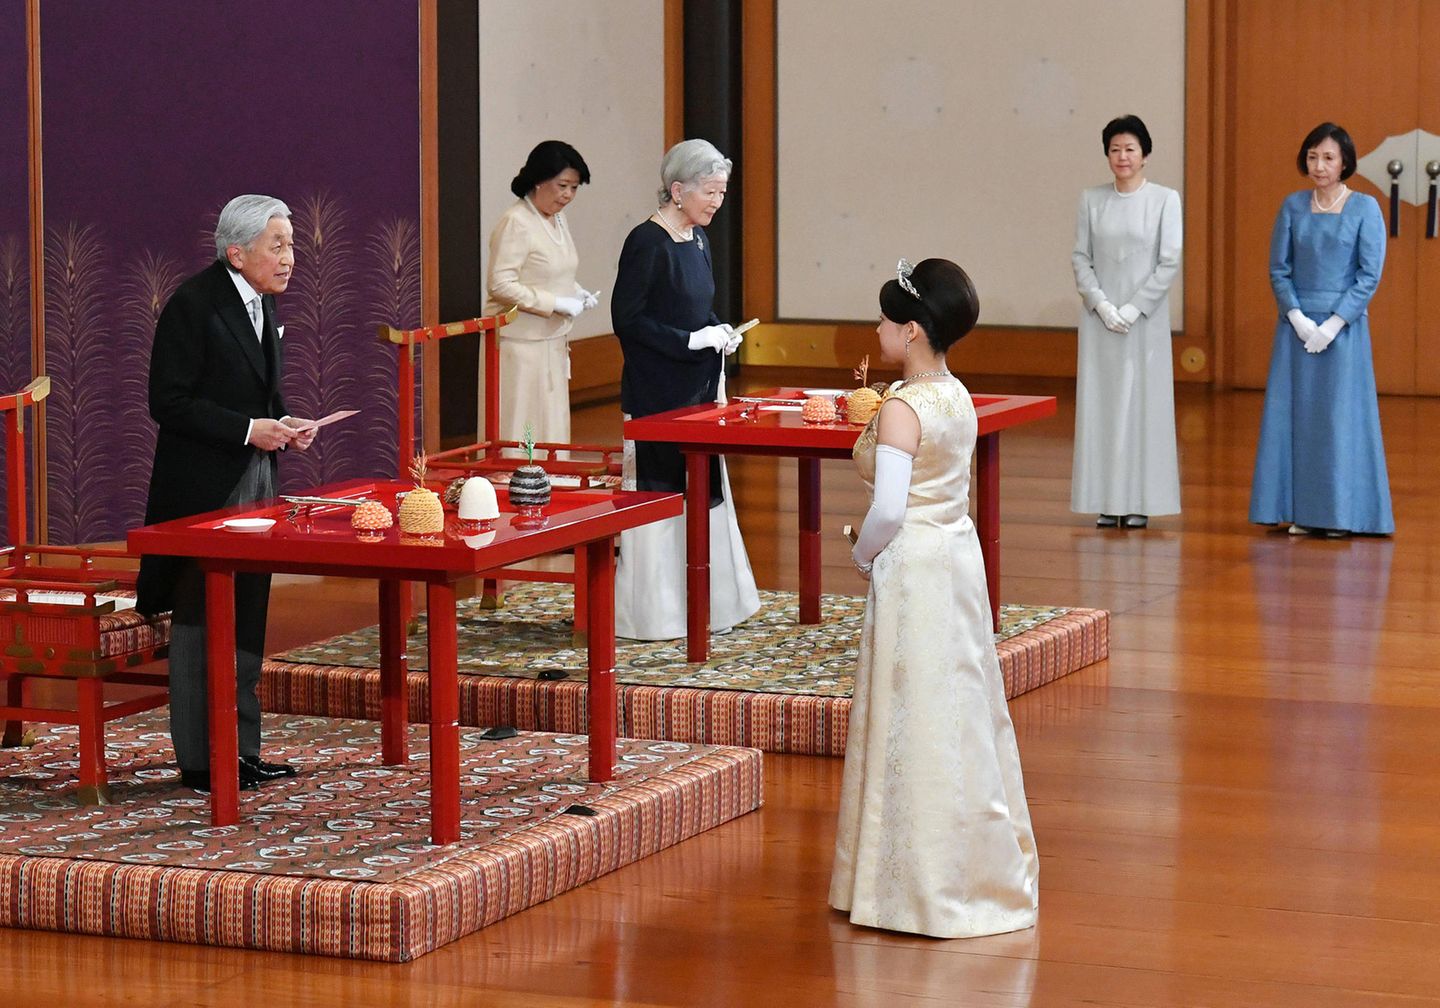 26. Oktober 2018  Drei Tage vor ihrer Hochzeit verabschiedet sich Prinzessin Ayako vor ihren Großeltern Kaiser Akihito und Kaiserin Michiko beim traditionellen "Choken no Gi"-Ritual von der Familie, um ihren Weg in die Ehe anzutreten.